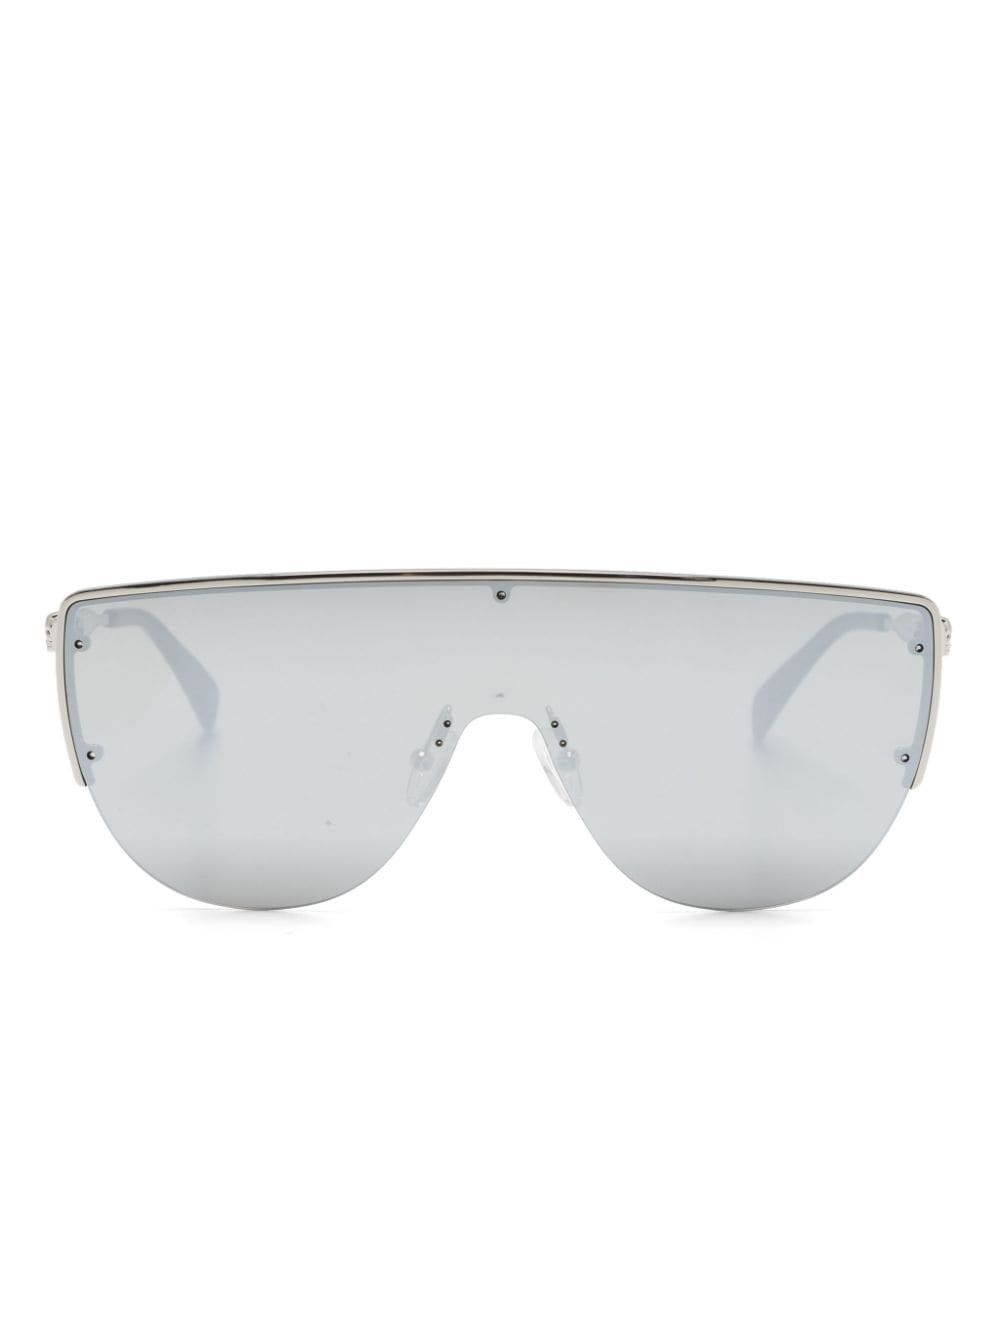 Shield-frame sunglasses<BR/><BR/><BR/><BR/><BR/>